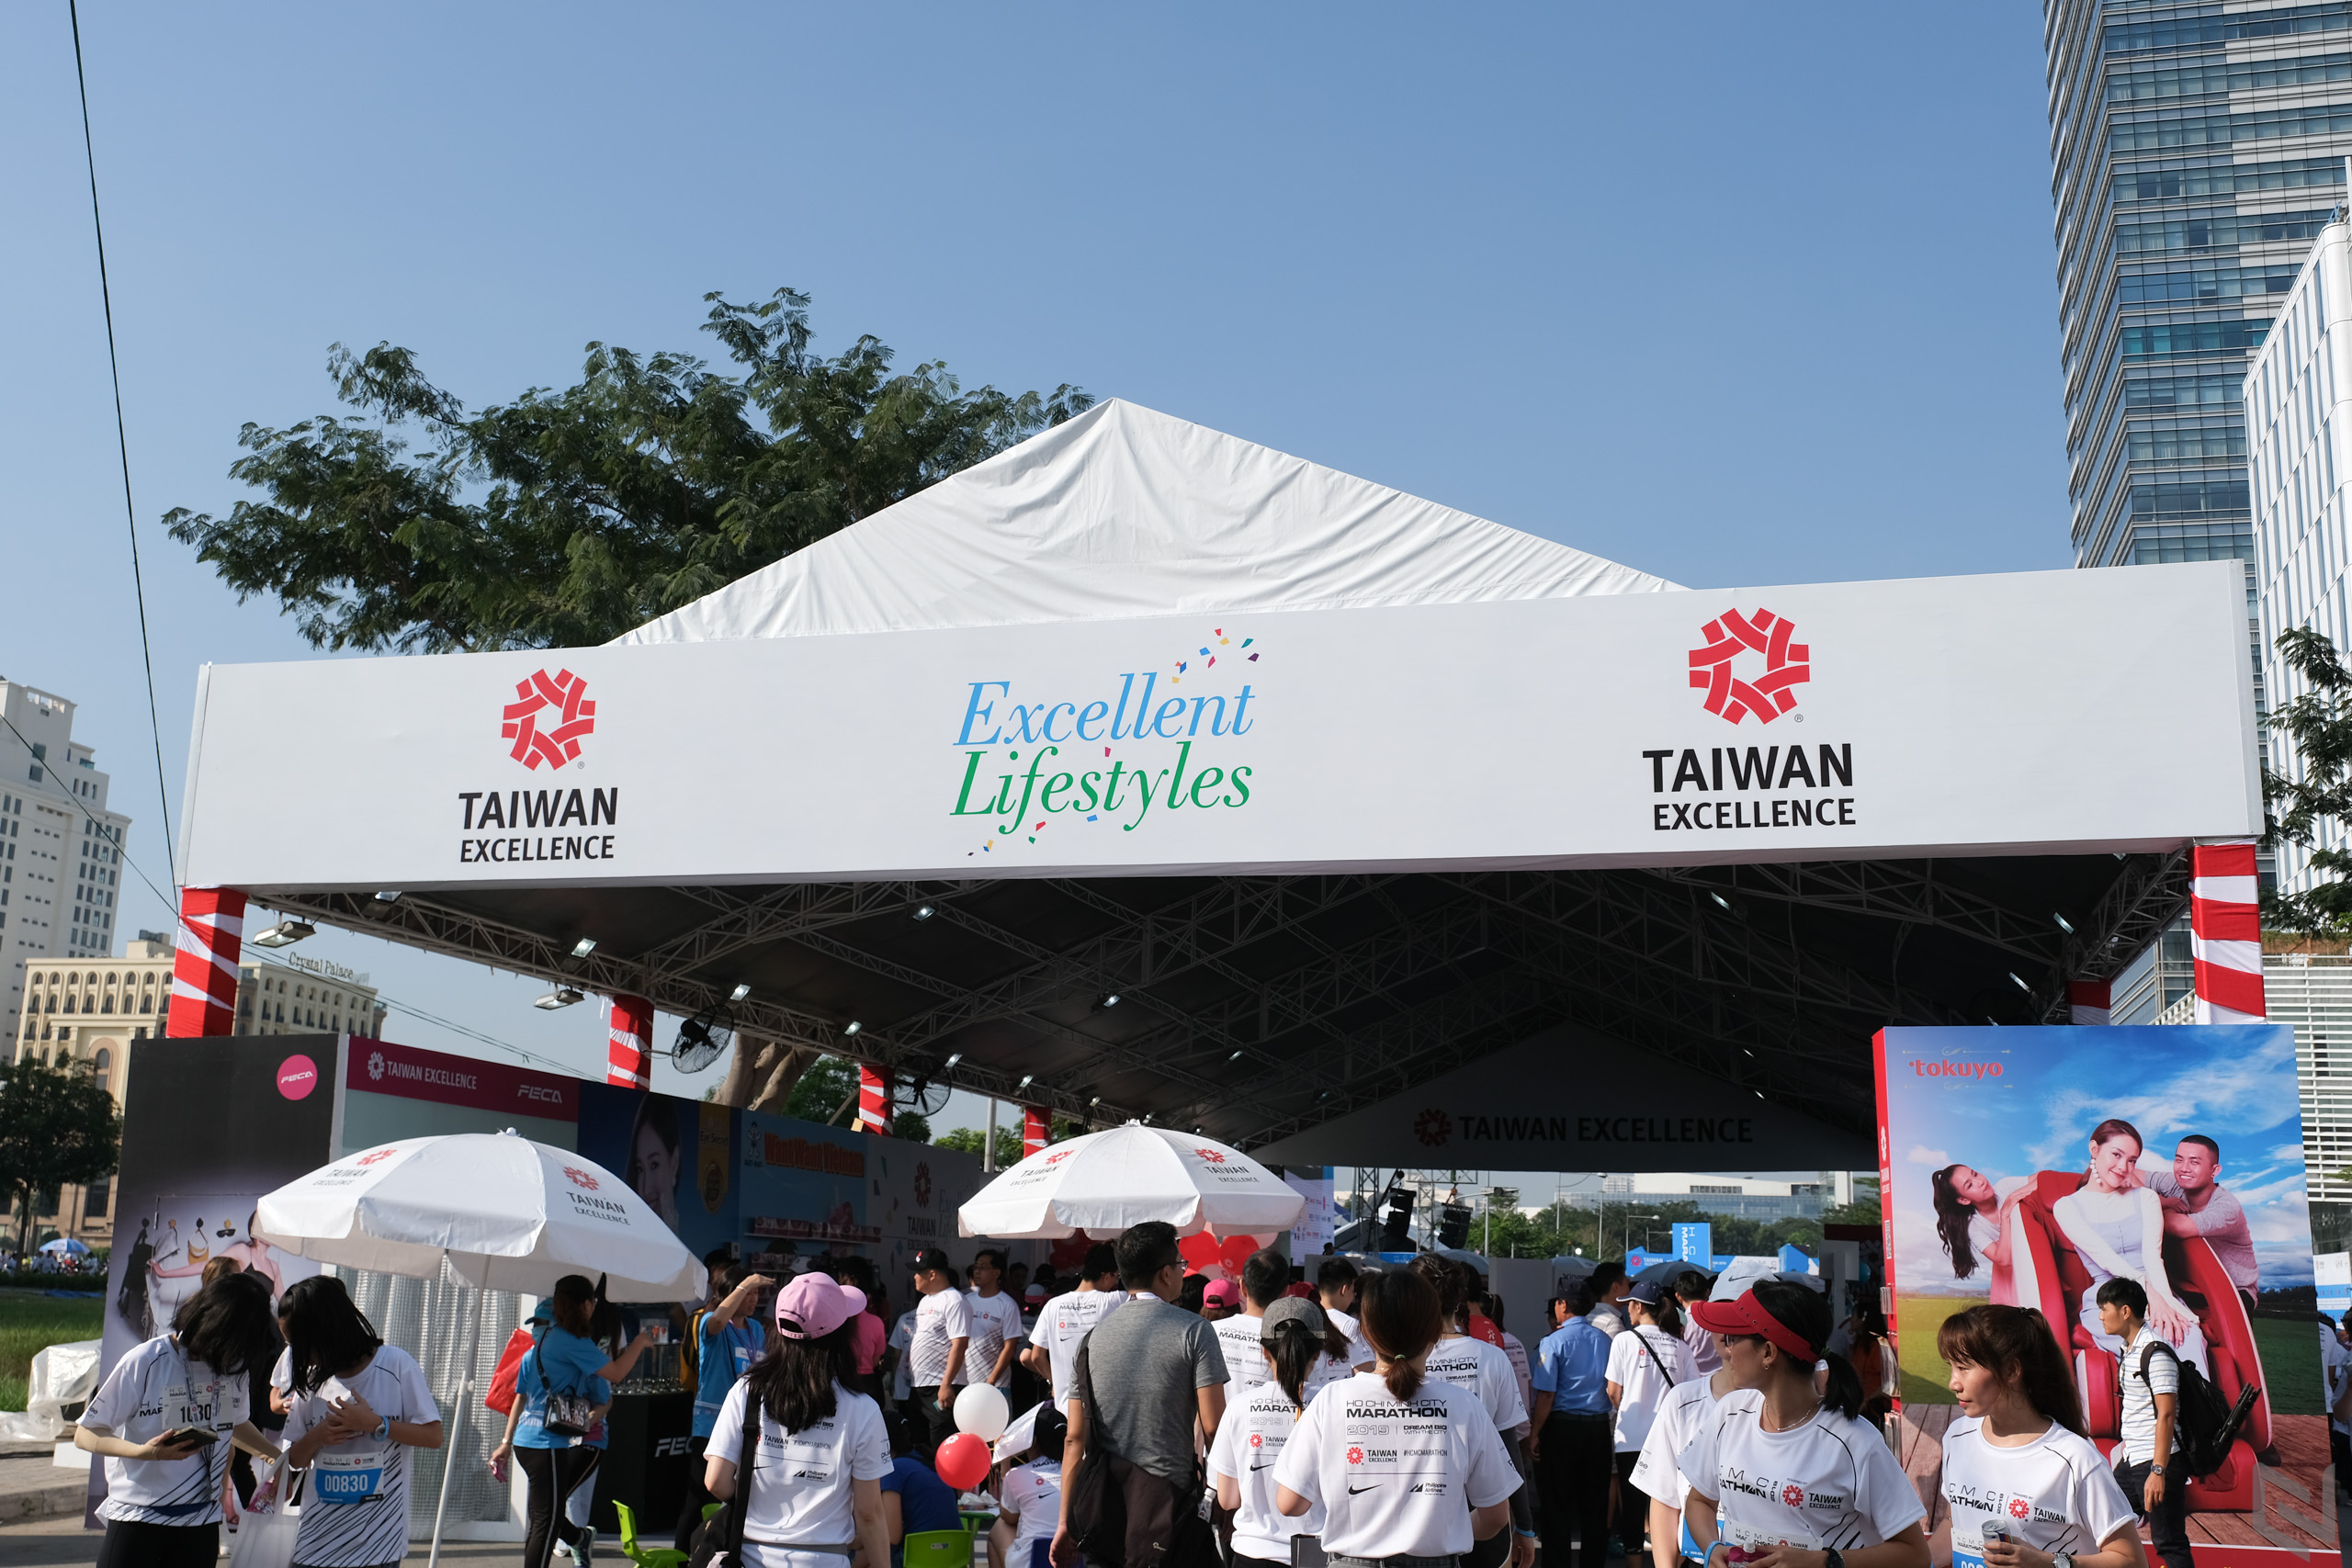 Taiwan Excellence chinh phục “Giấc mơ lớn” mang tên HCMC MARATHON 2019 bằng đột phá công nghệ